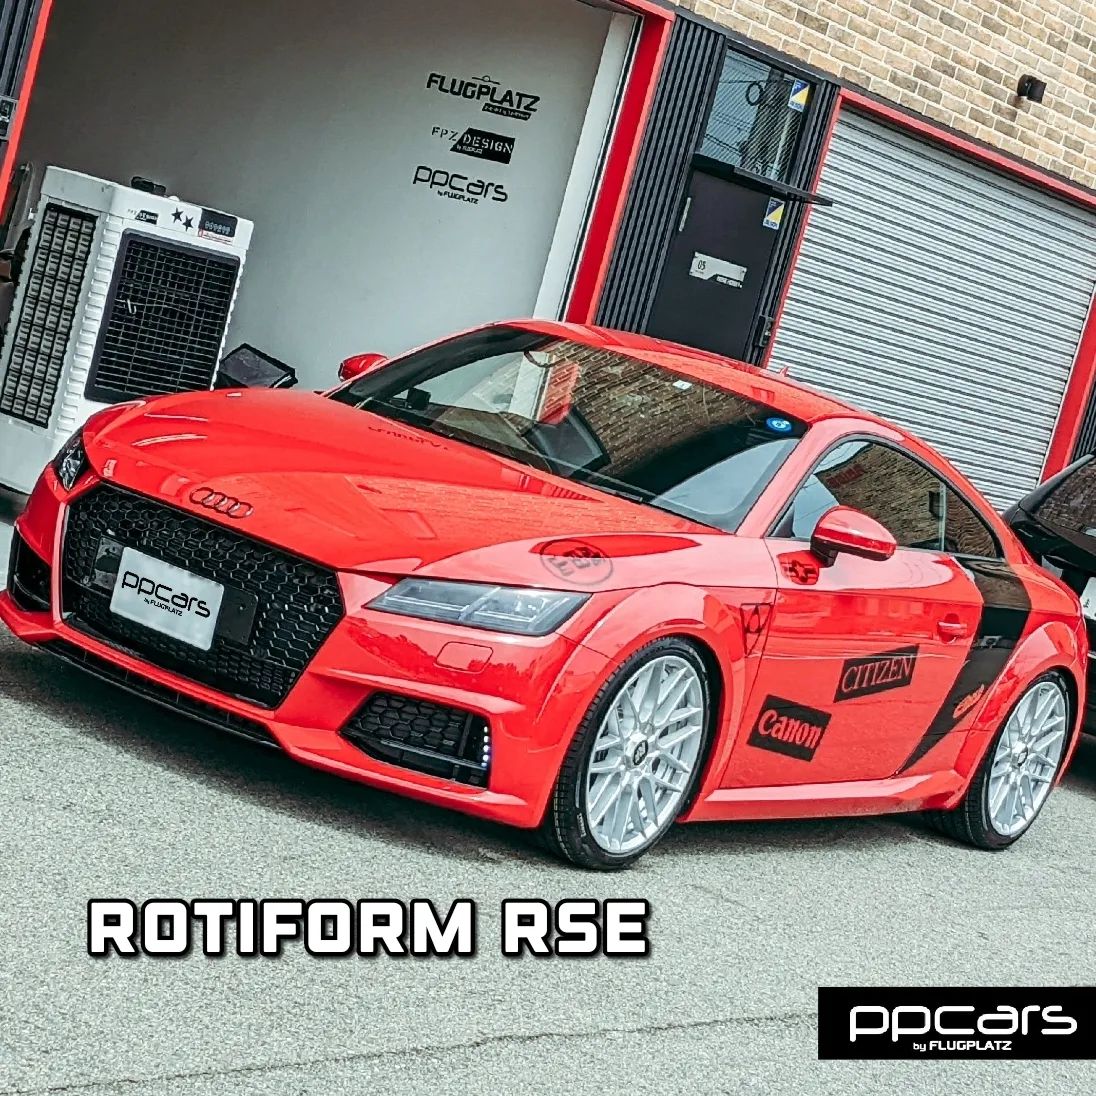 Audi TT (8S) x rotiform RSE & Aerodisc